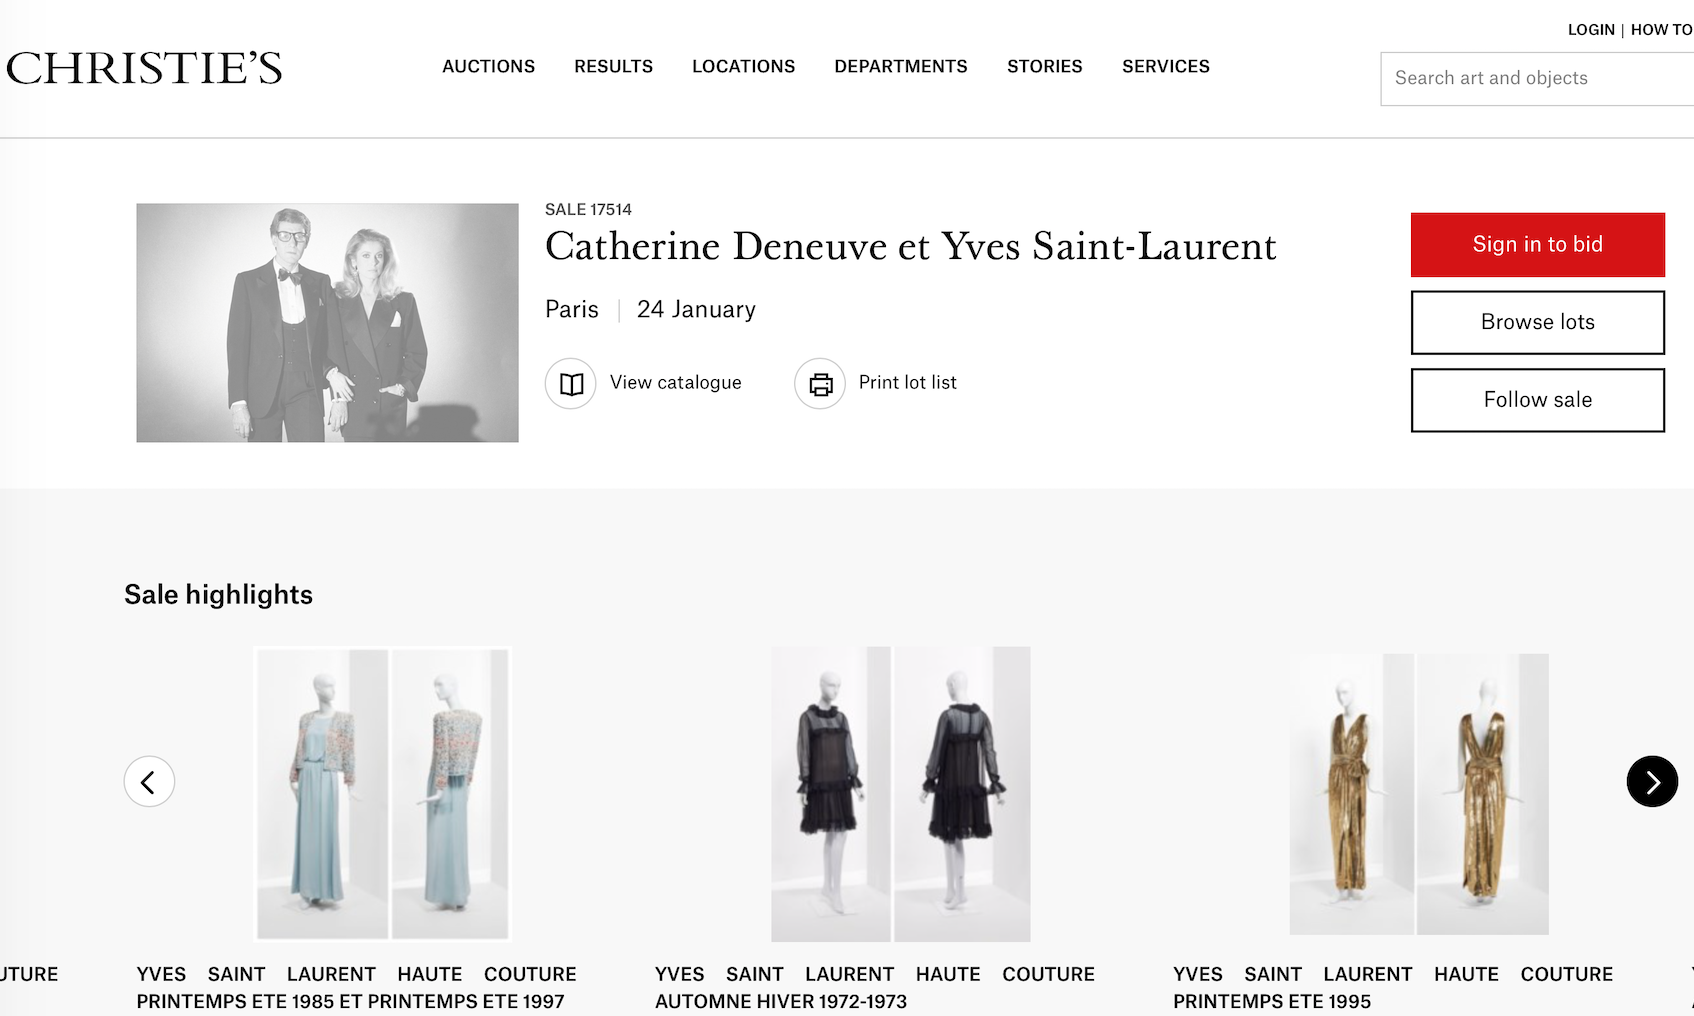 法國傳奇女演員凱薩琳丹妮芙拍賣一批珍貴的YSL高訂禮服，130件拍得百萬美元(2).png